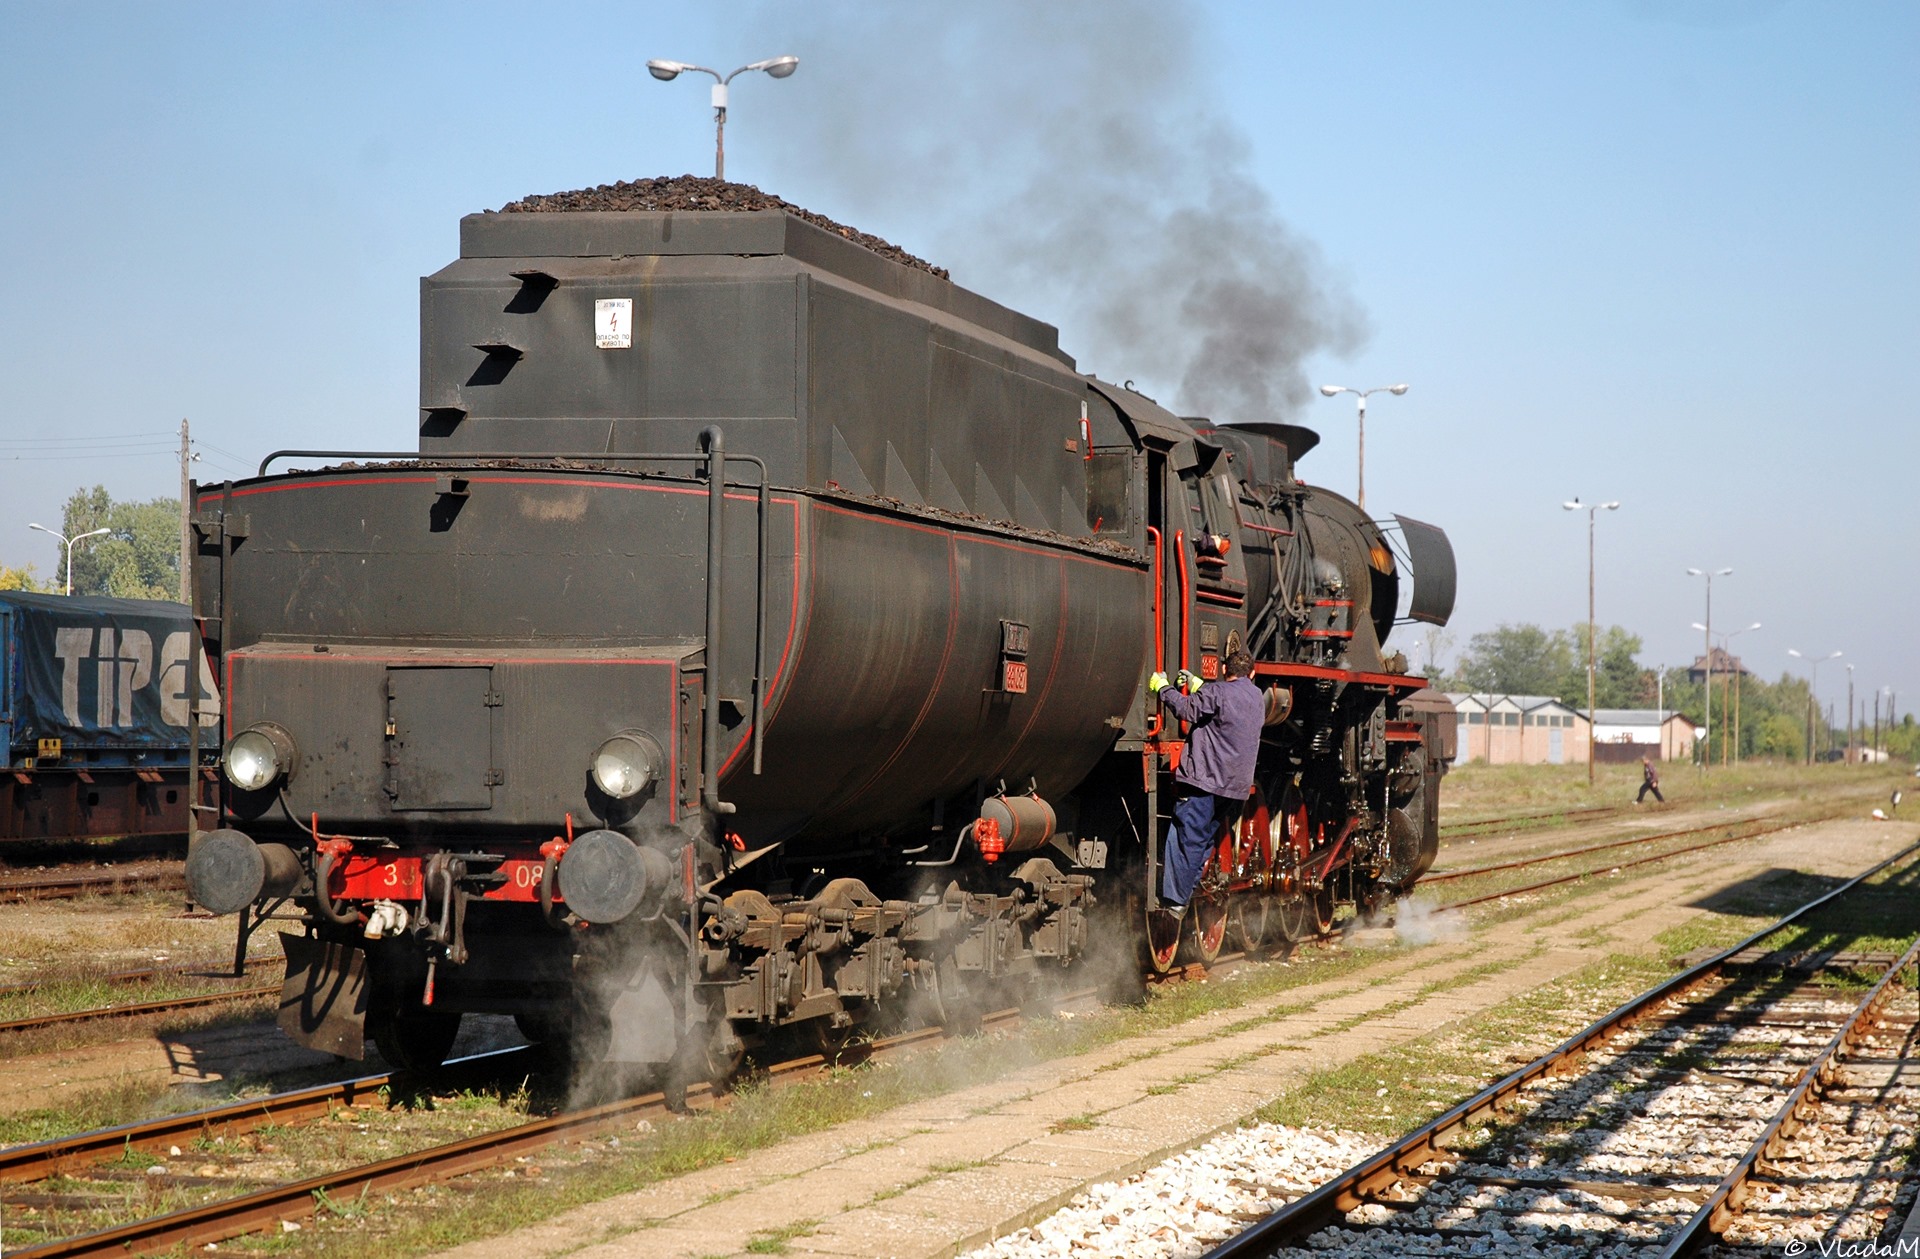 Parna lokomotiva 33-087, voz -Romantika-, 2007. manevriše u stanici Vršac..jpg